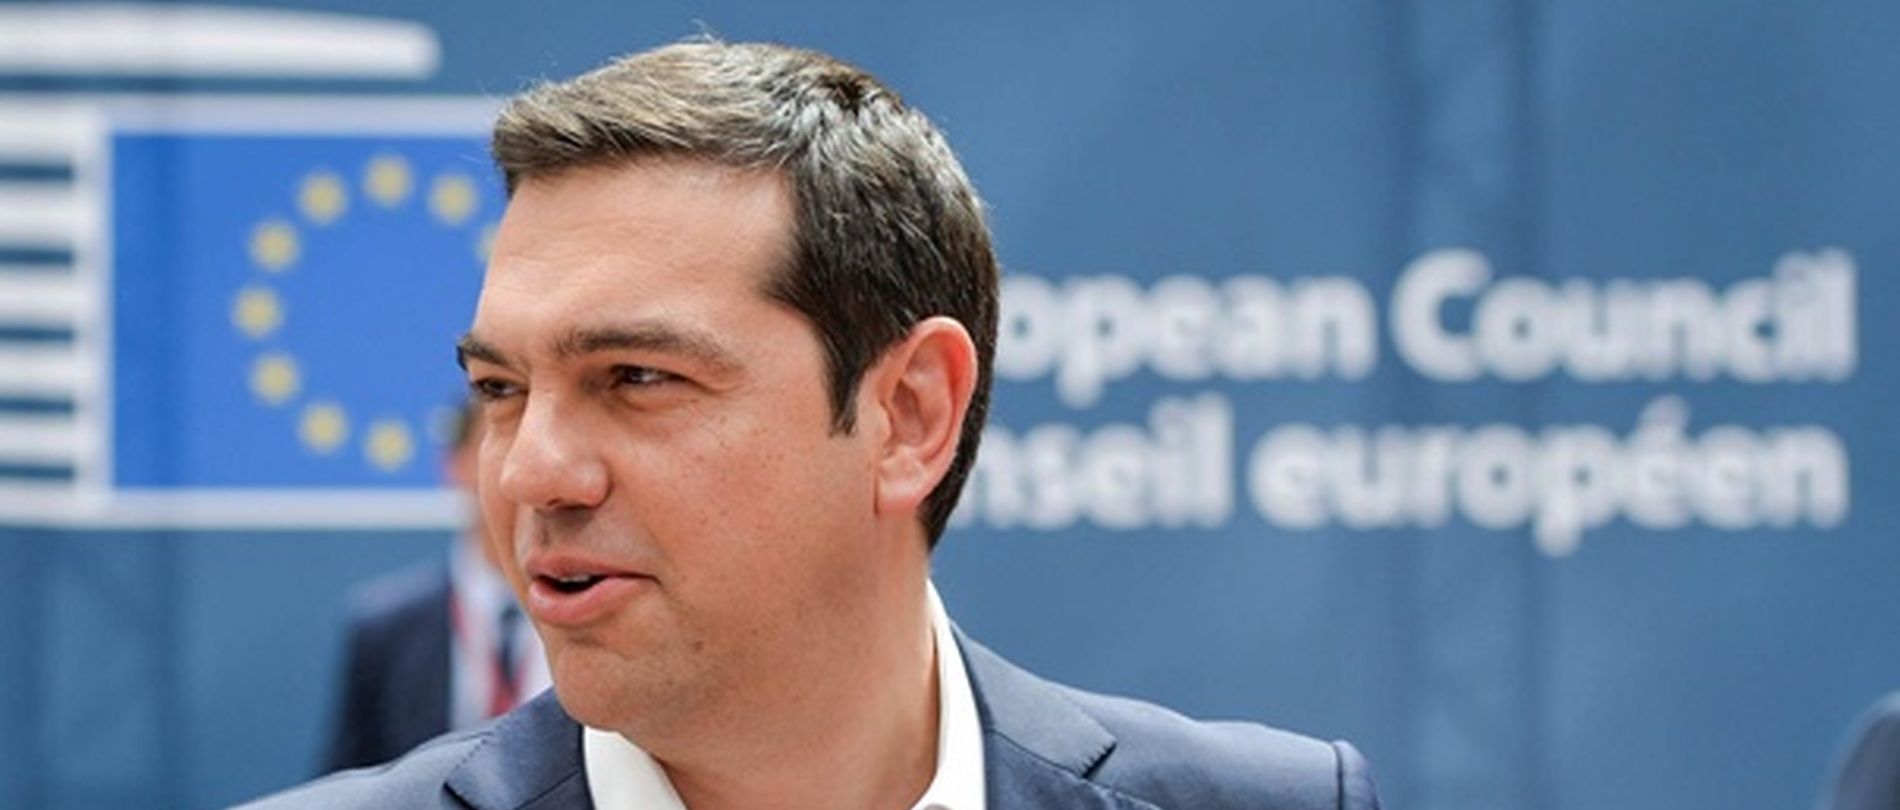 KRIZNI SASTANAK O GRČKOJ Euroskupina nastavila sastanak bez previše optimizma za mogući dogovor